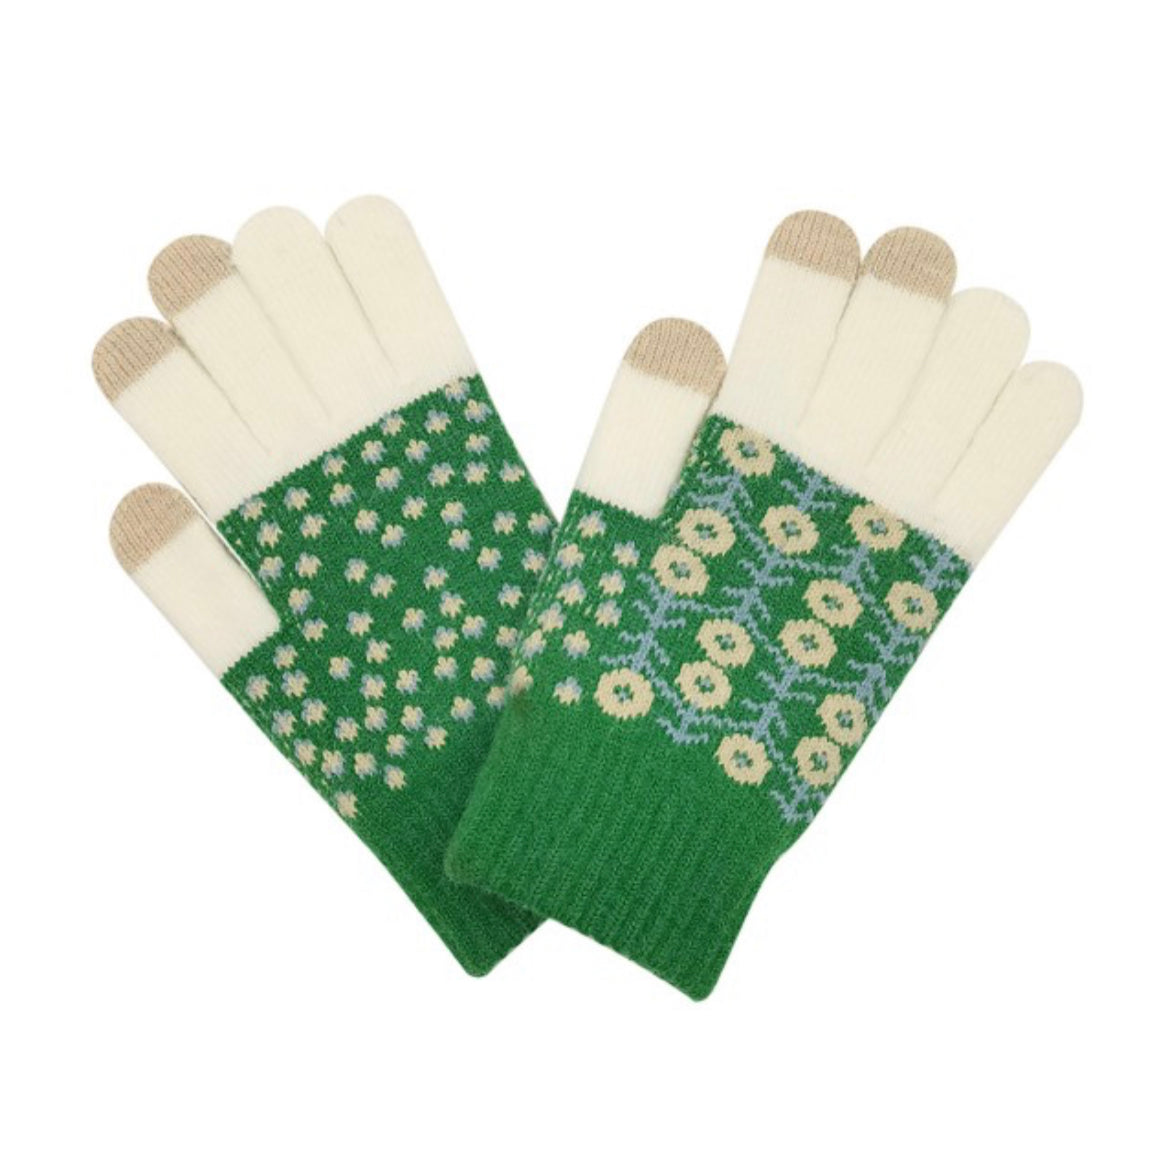 Green flower gloves